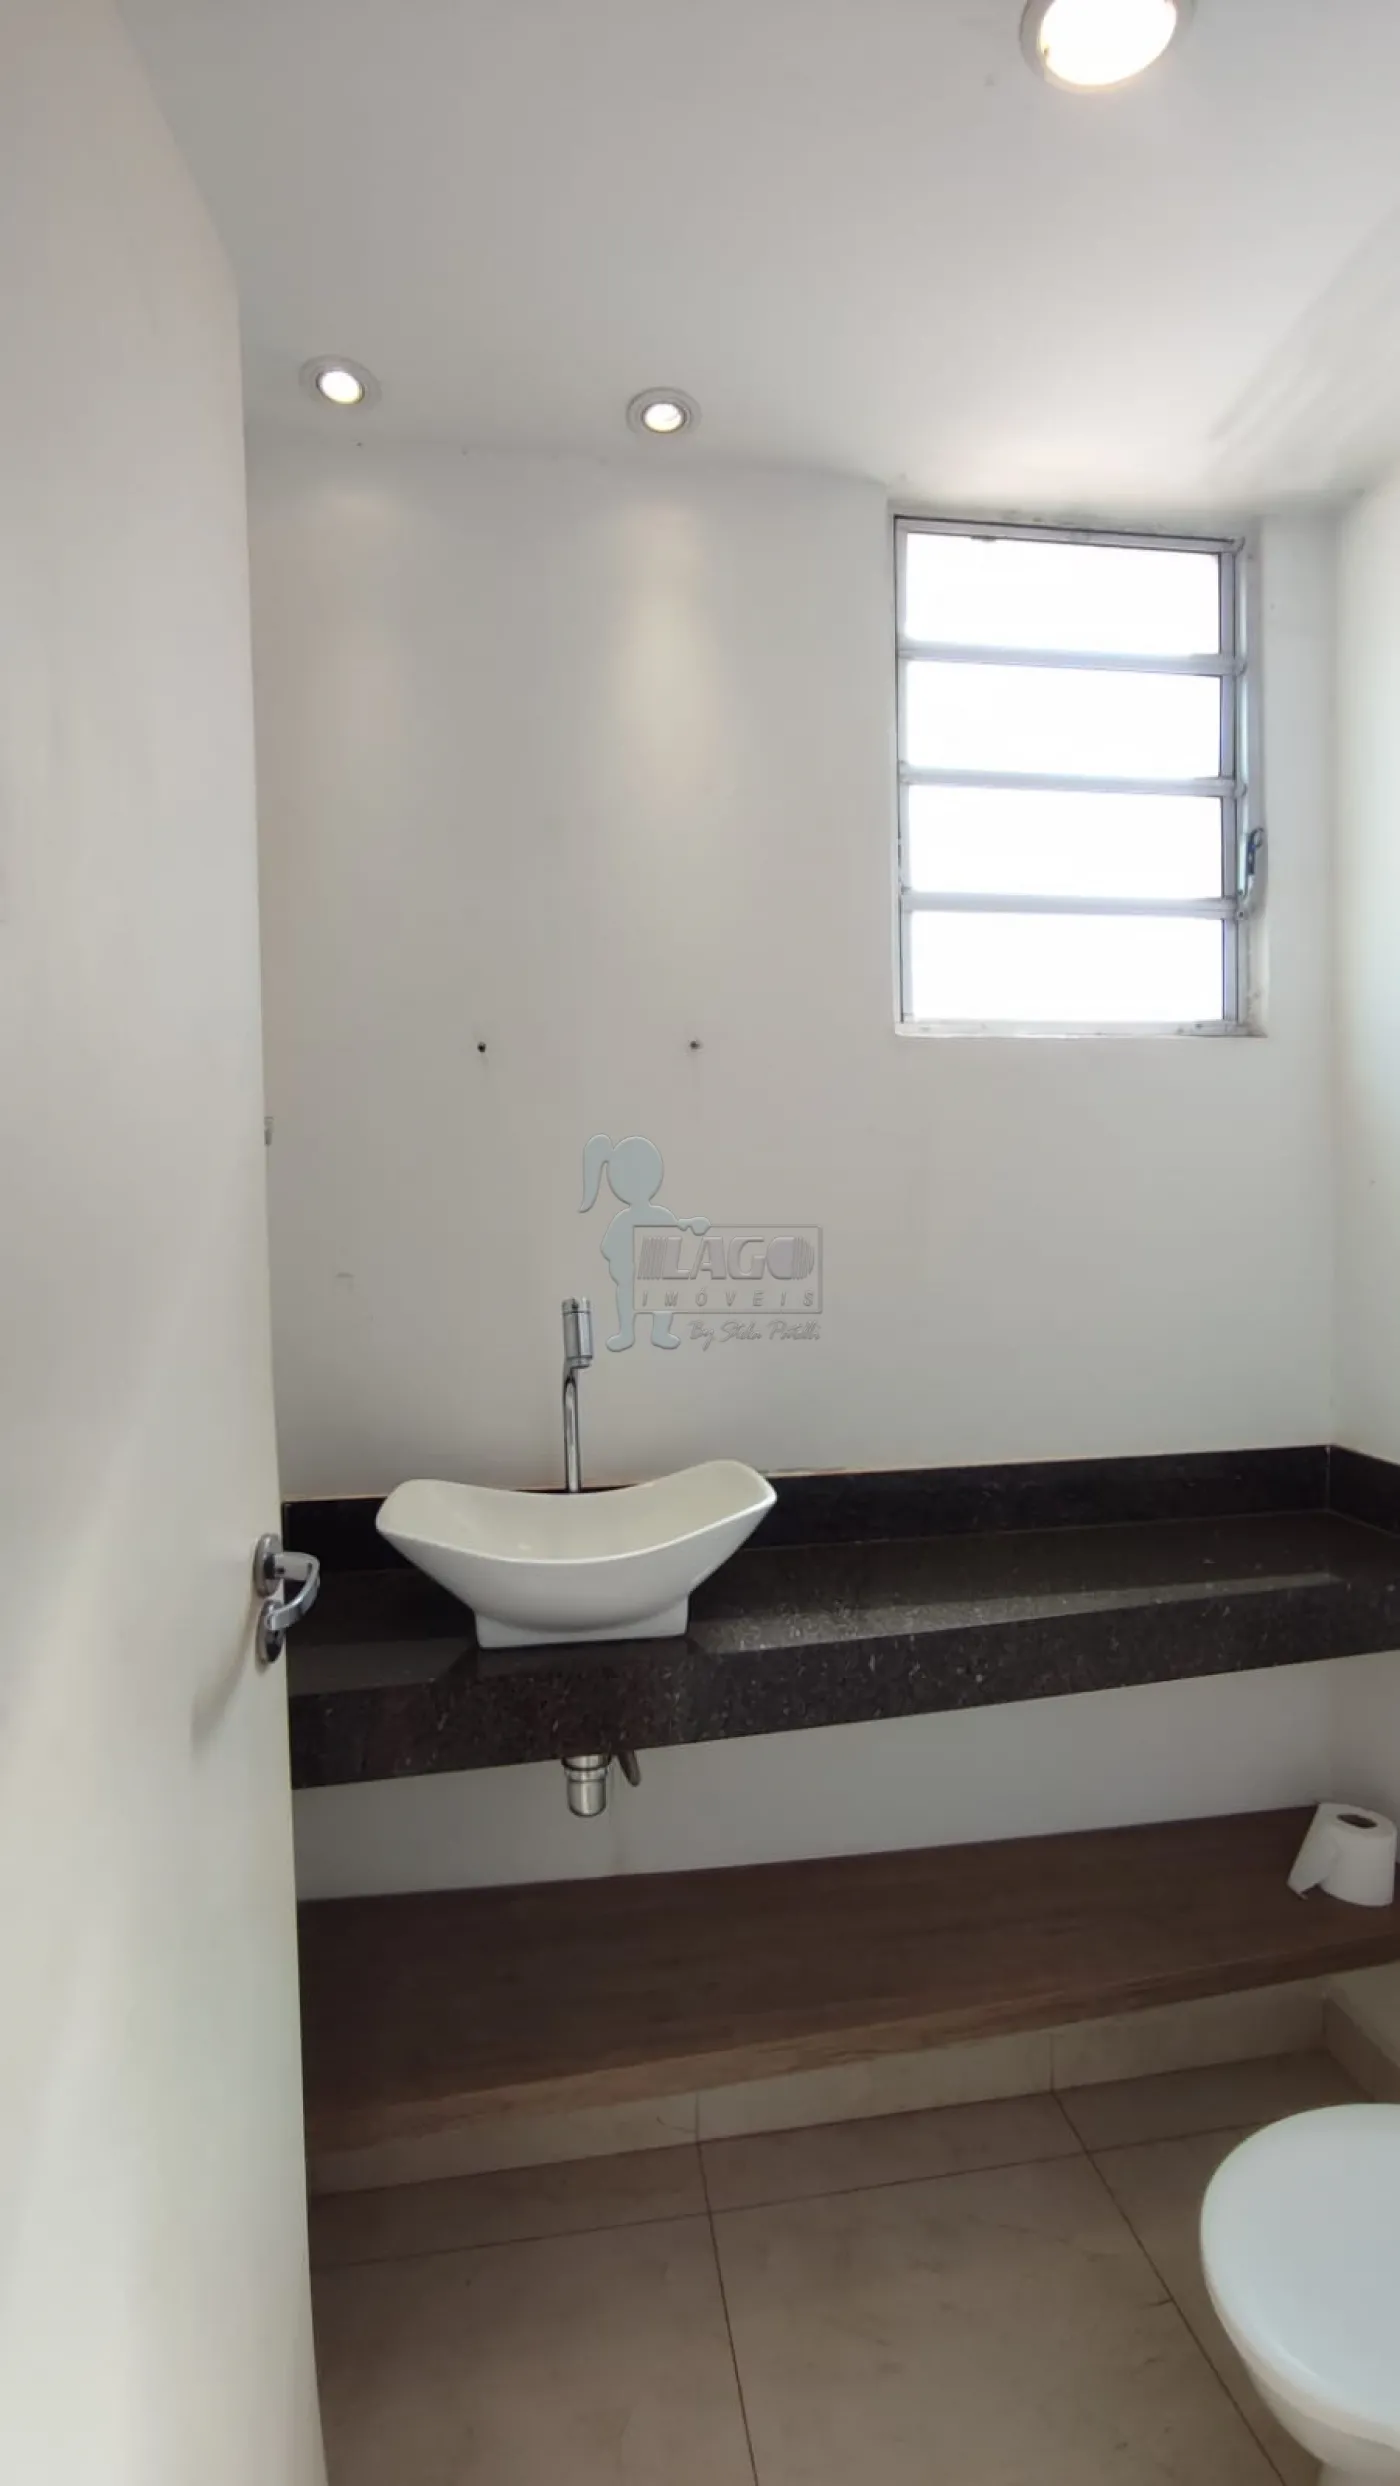 Comprar Apartamento / Cobertura duplex em Ribeirão Preto R$ 350.000,00 - Foto 12